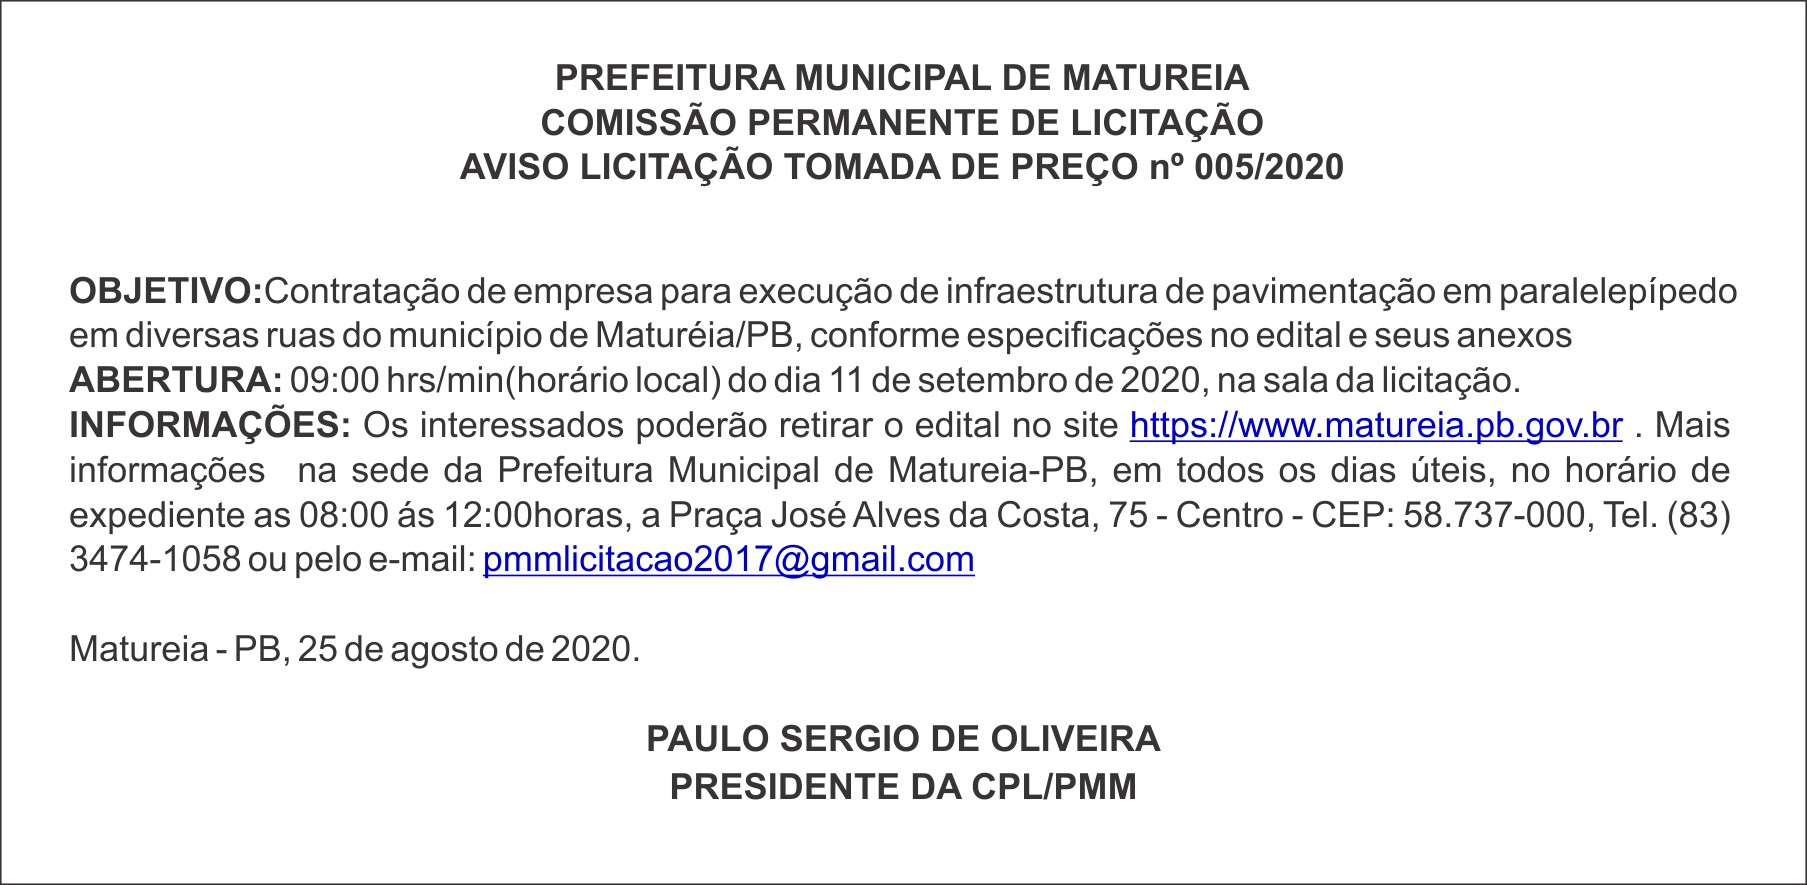 PREFEITURA MUNICIPAL DE MATUREIA – AVISO LICITAÇÃO – TOMADA DE PREÇO nº 005/2020